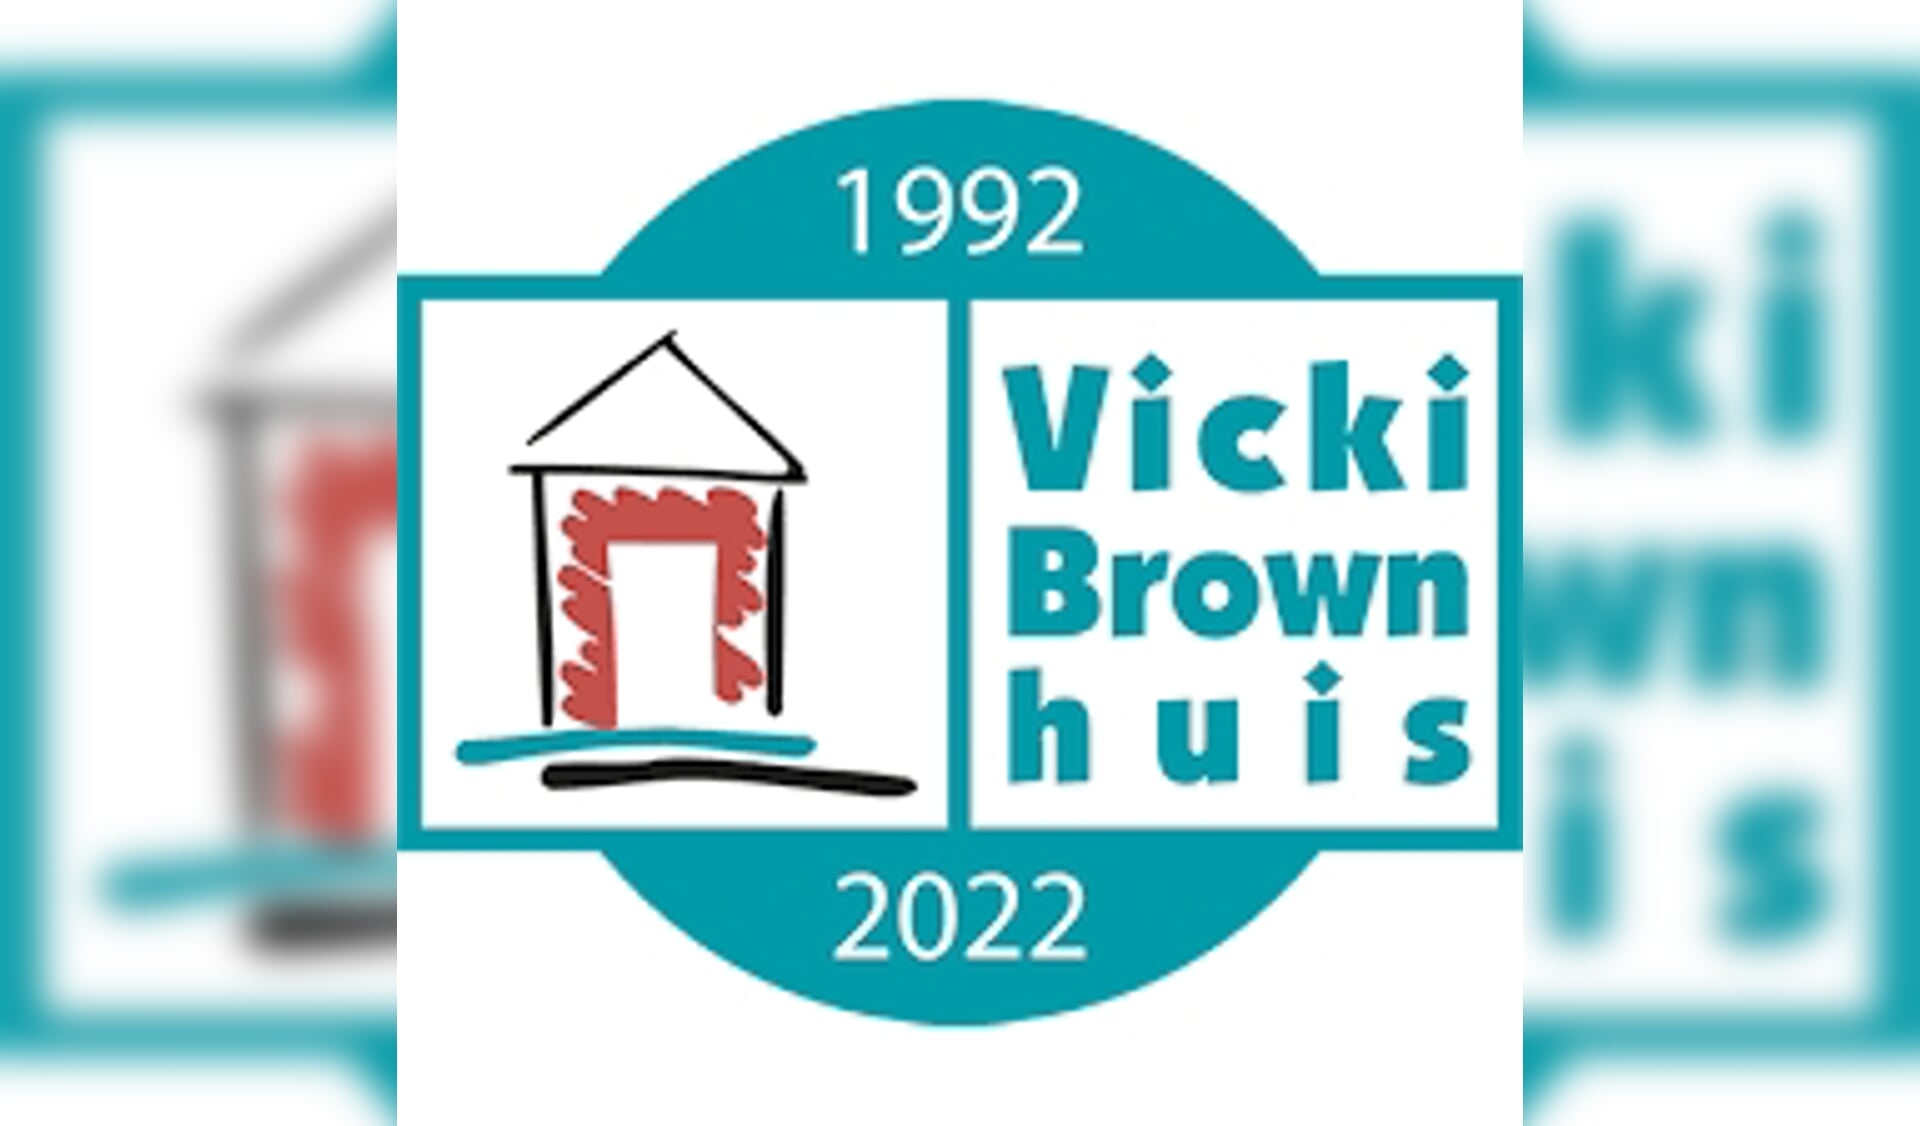 Het Vicki Brownhuis aan de Aartshertogenlaan 469 in Den Bosch is het eerste centrum voor leven met en na kanker in Nederland en bestaat dit jaar dertig jaar.